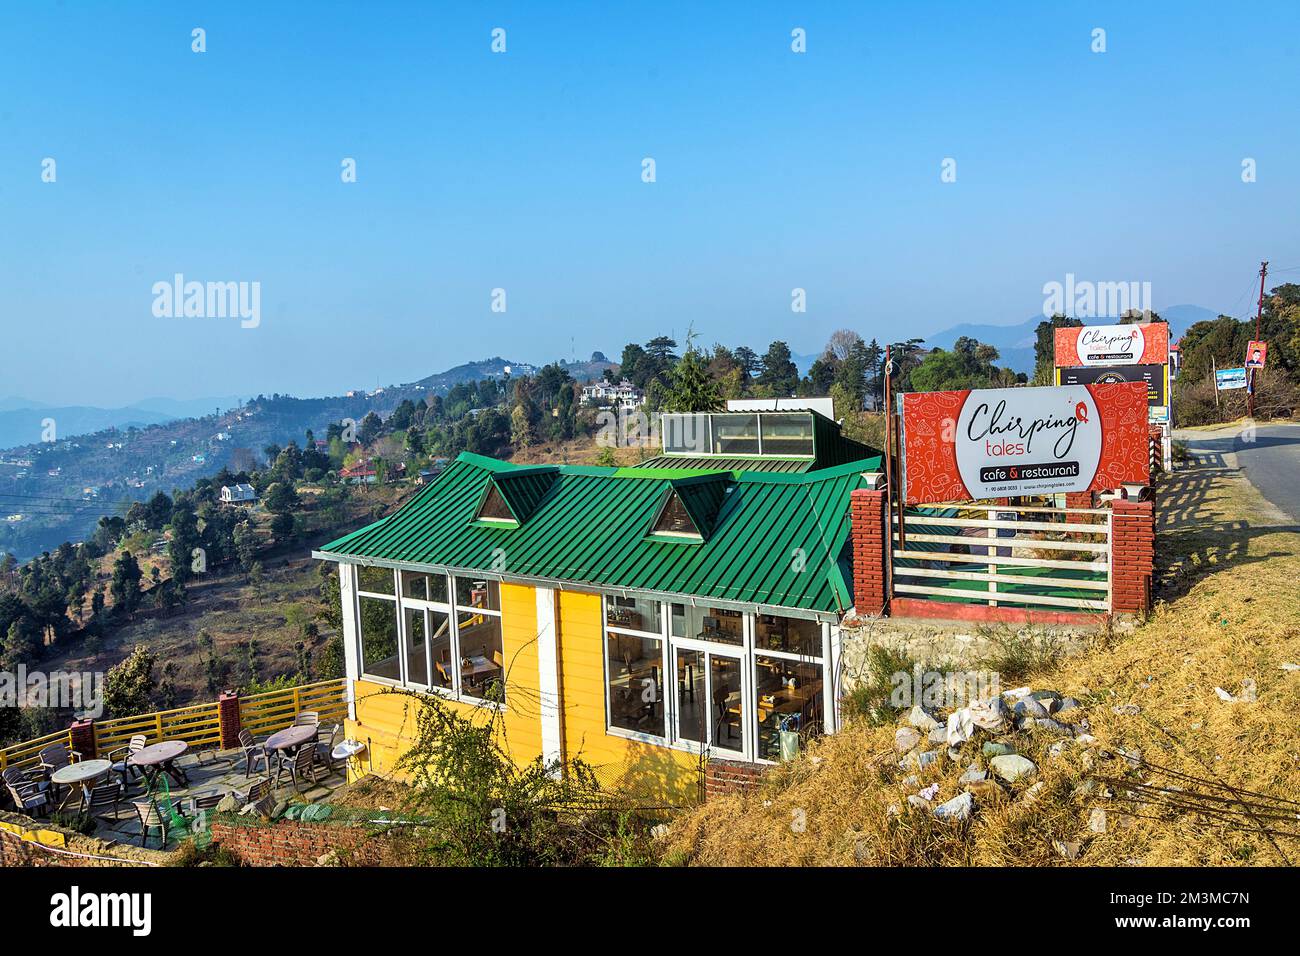 Chirping restaurante, Mukteshwar, Nainital, Kumaon, Uttarakhand, India Foto de stock